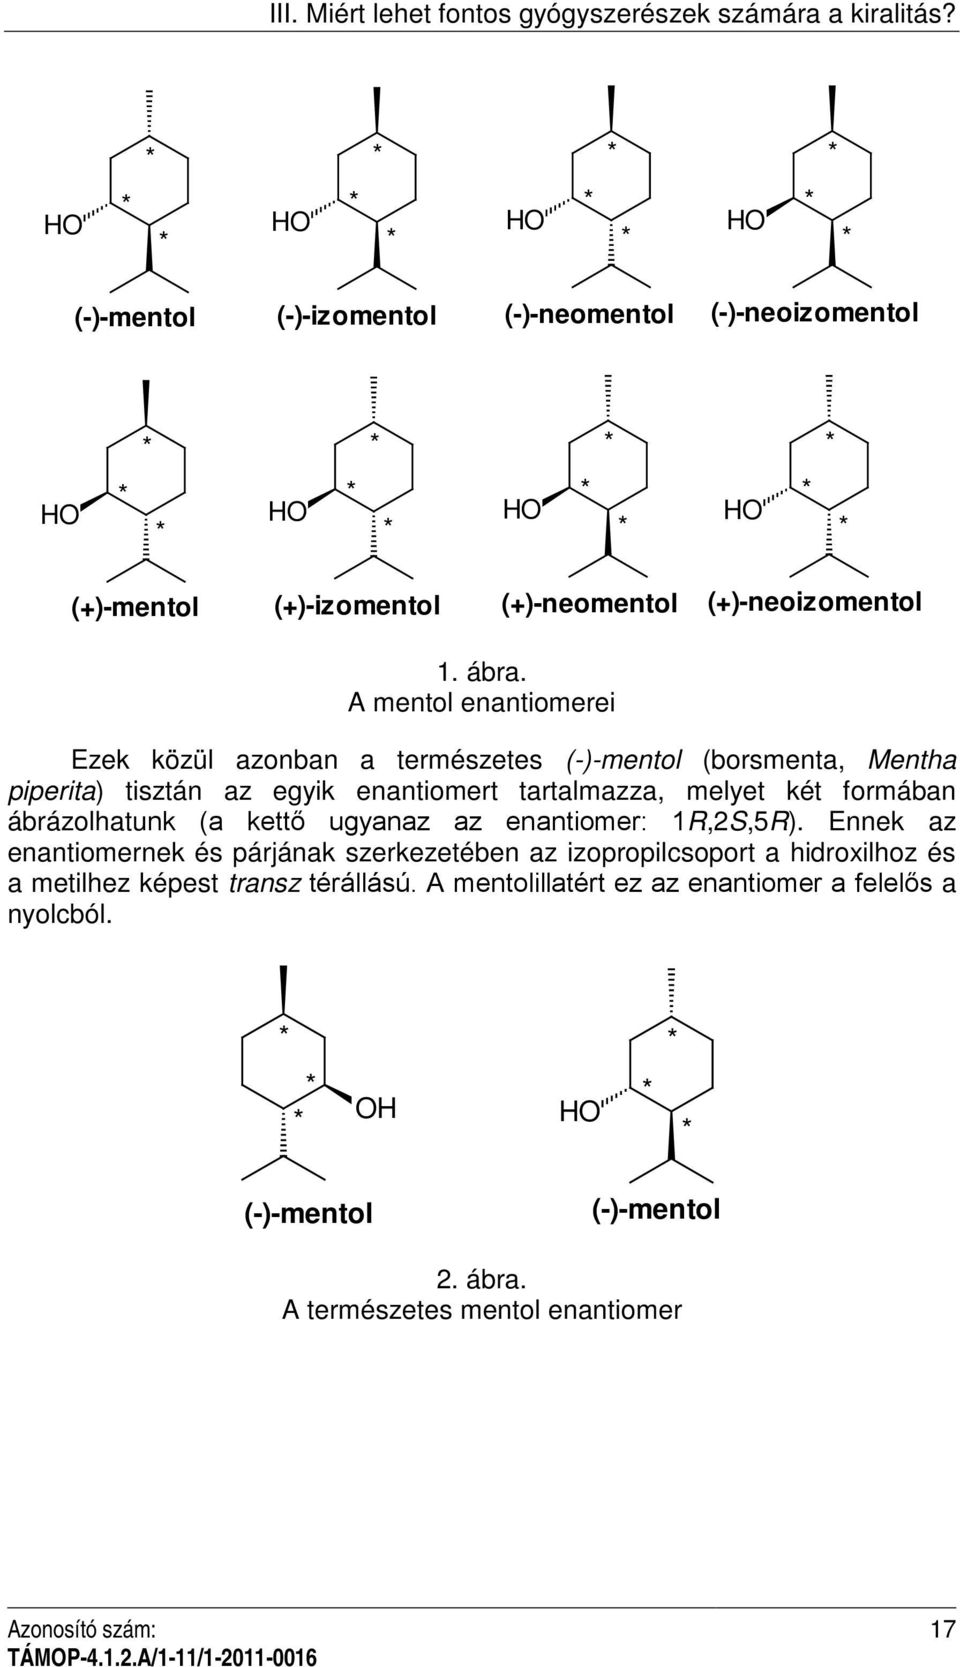 A mentol enantiomerei Ezek közül azonban a természetes (-)-mentol (borsmenta, Mentha piperita) tisztán az egyik enantiomert tartalmazza, melyet két formában ábrázolhatunk